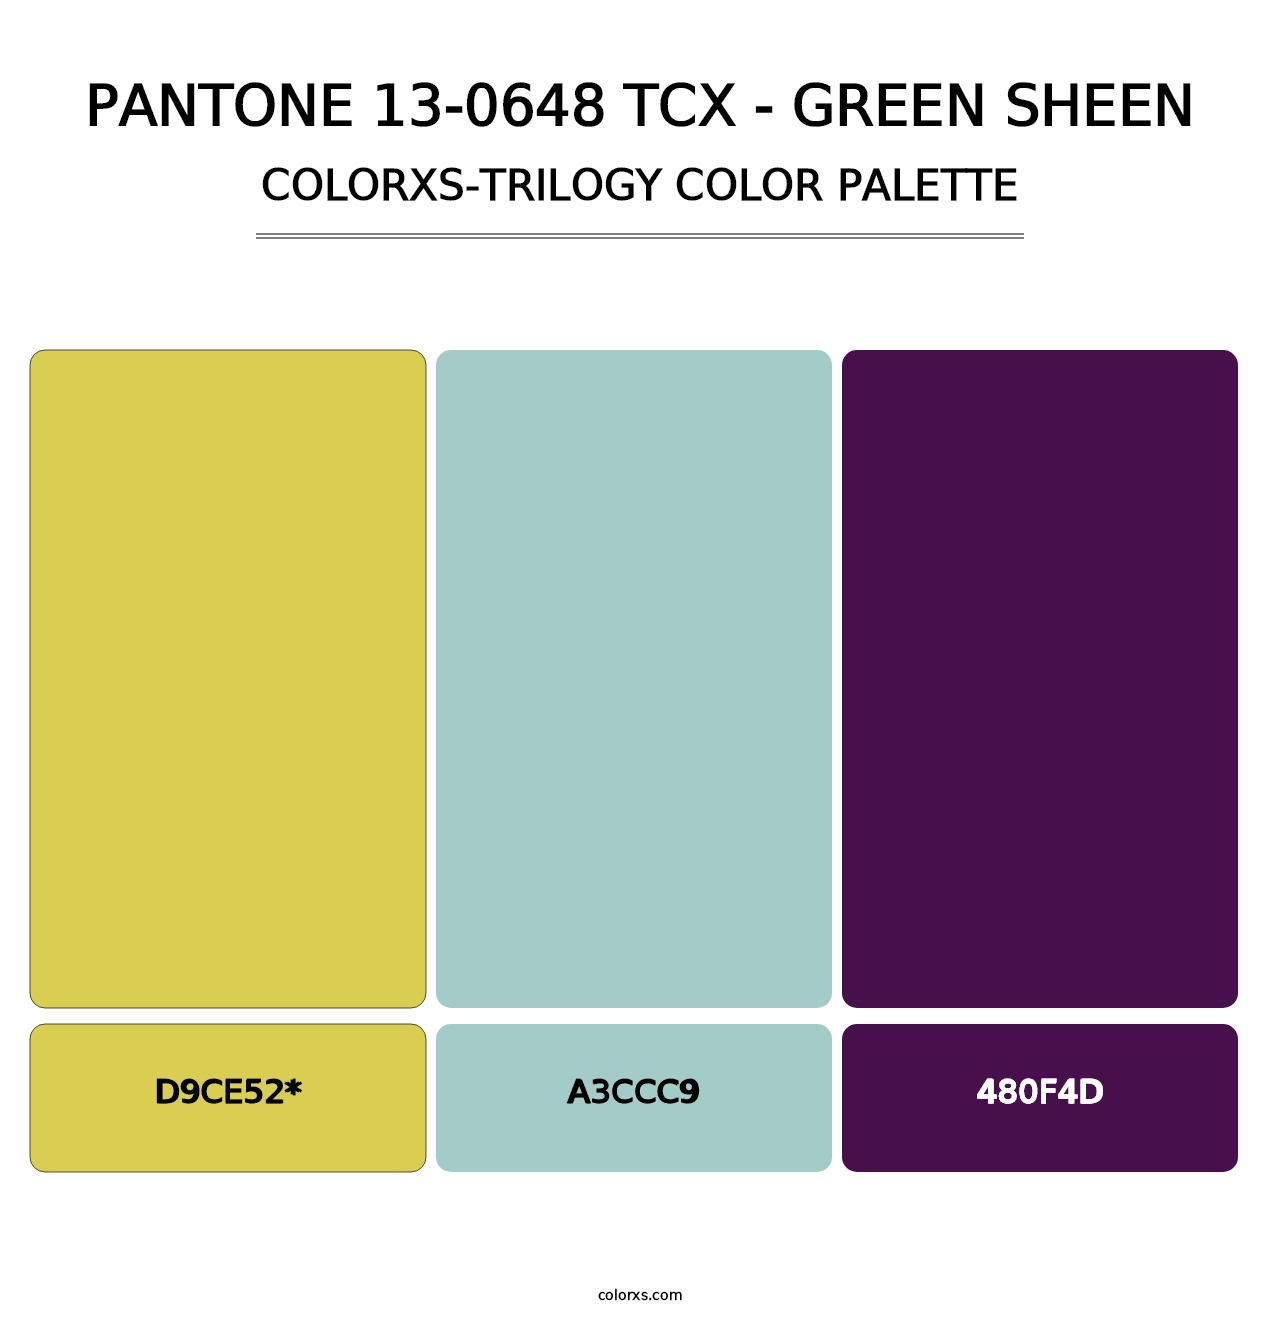 PANTONE 13-0648 TCX - Green Sheen - Colorxs Trilogy Palette